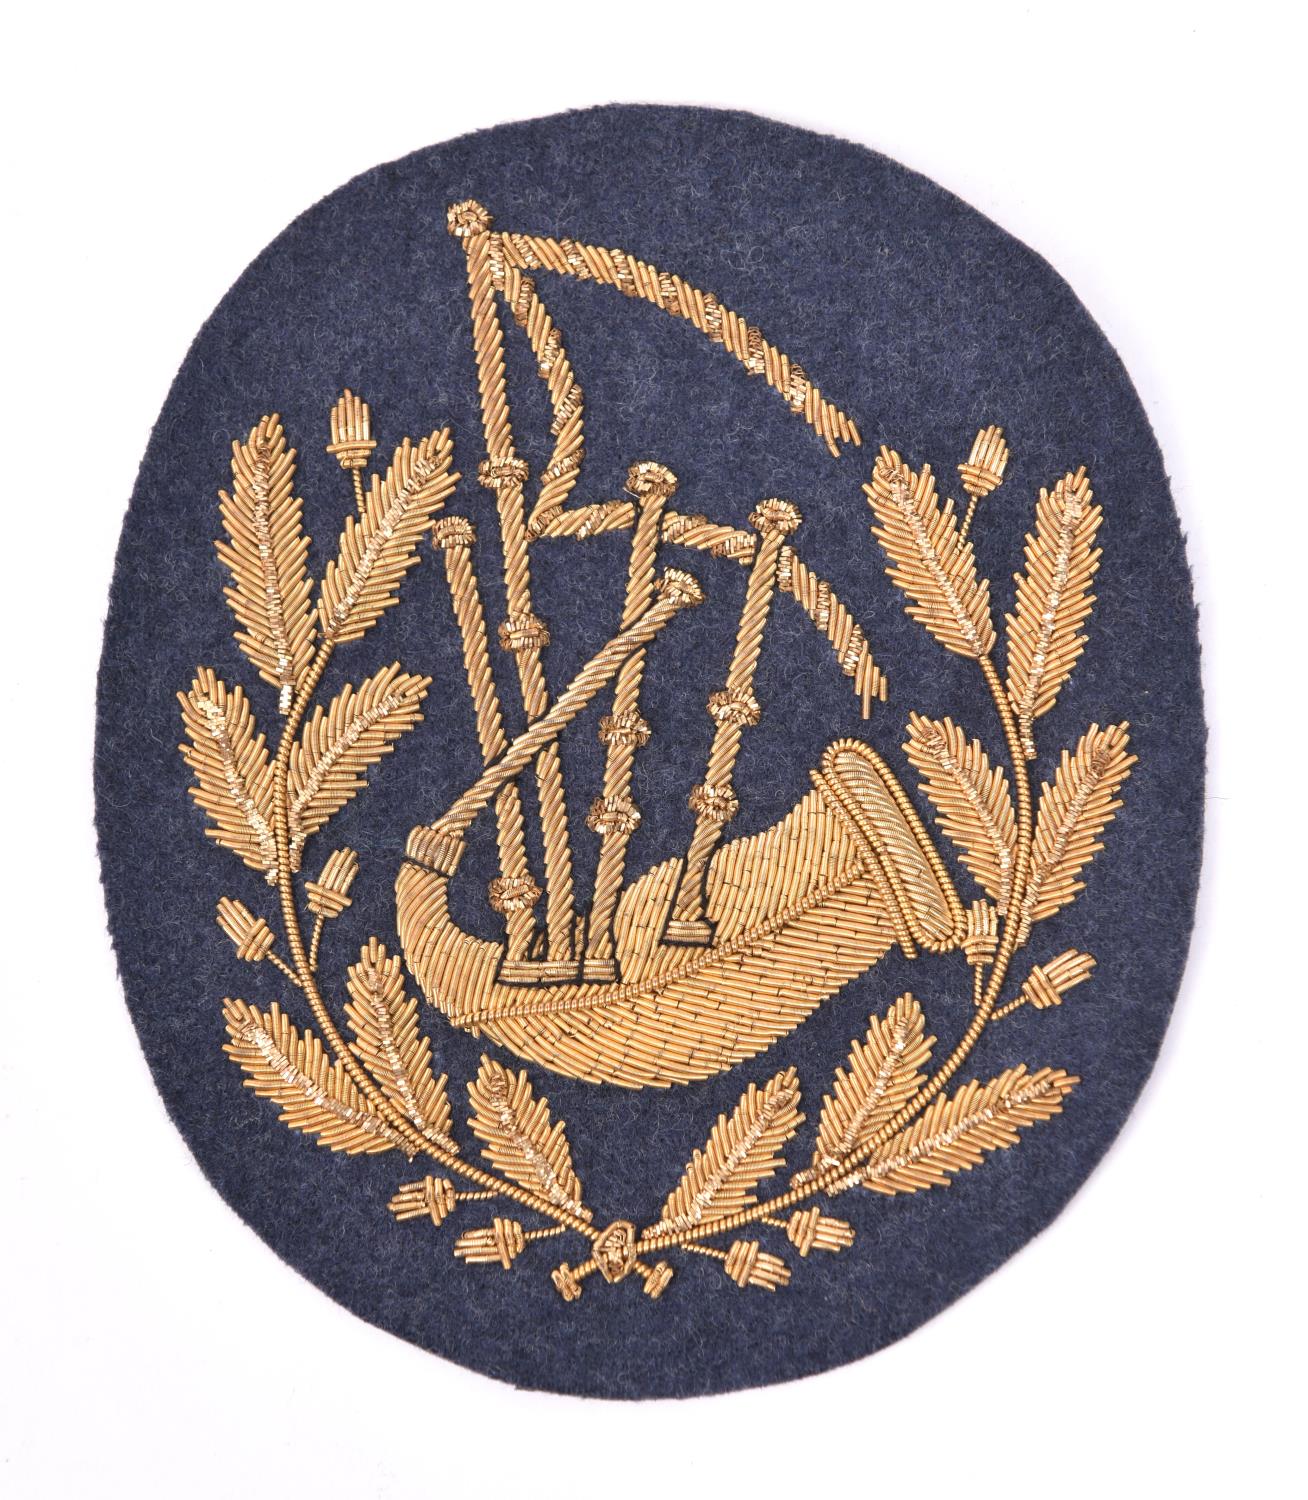 A scarce RAF pipers arm badge, gilt bullion on RAF grey cloth. VGC £100-120